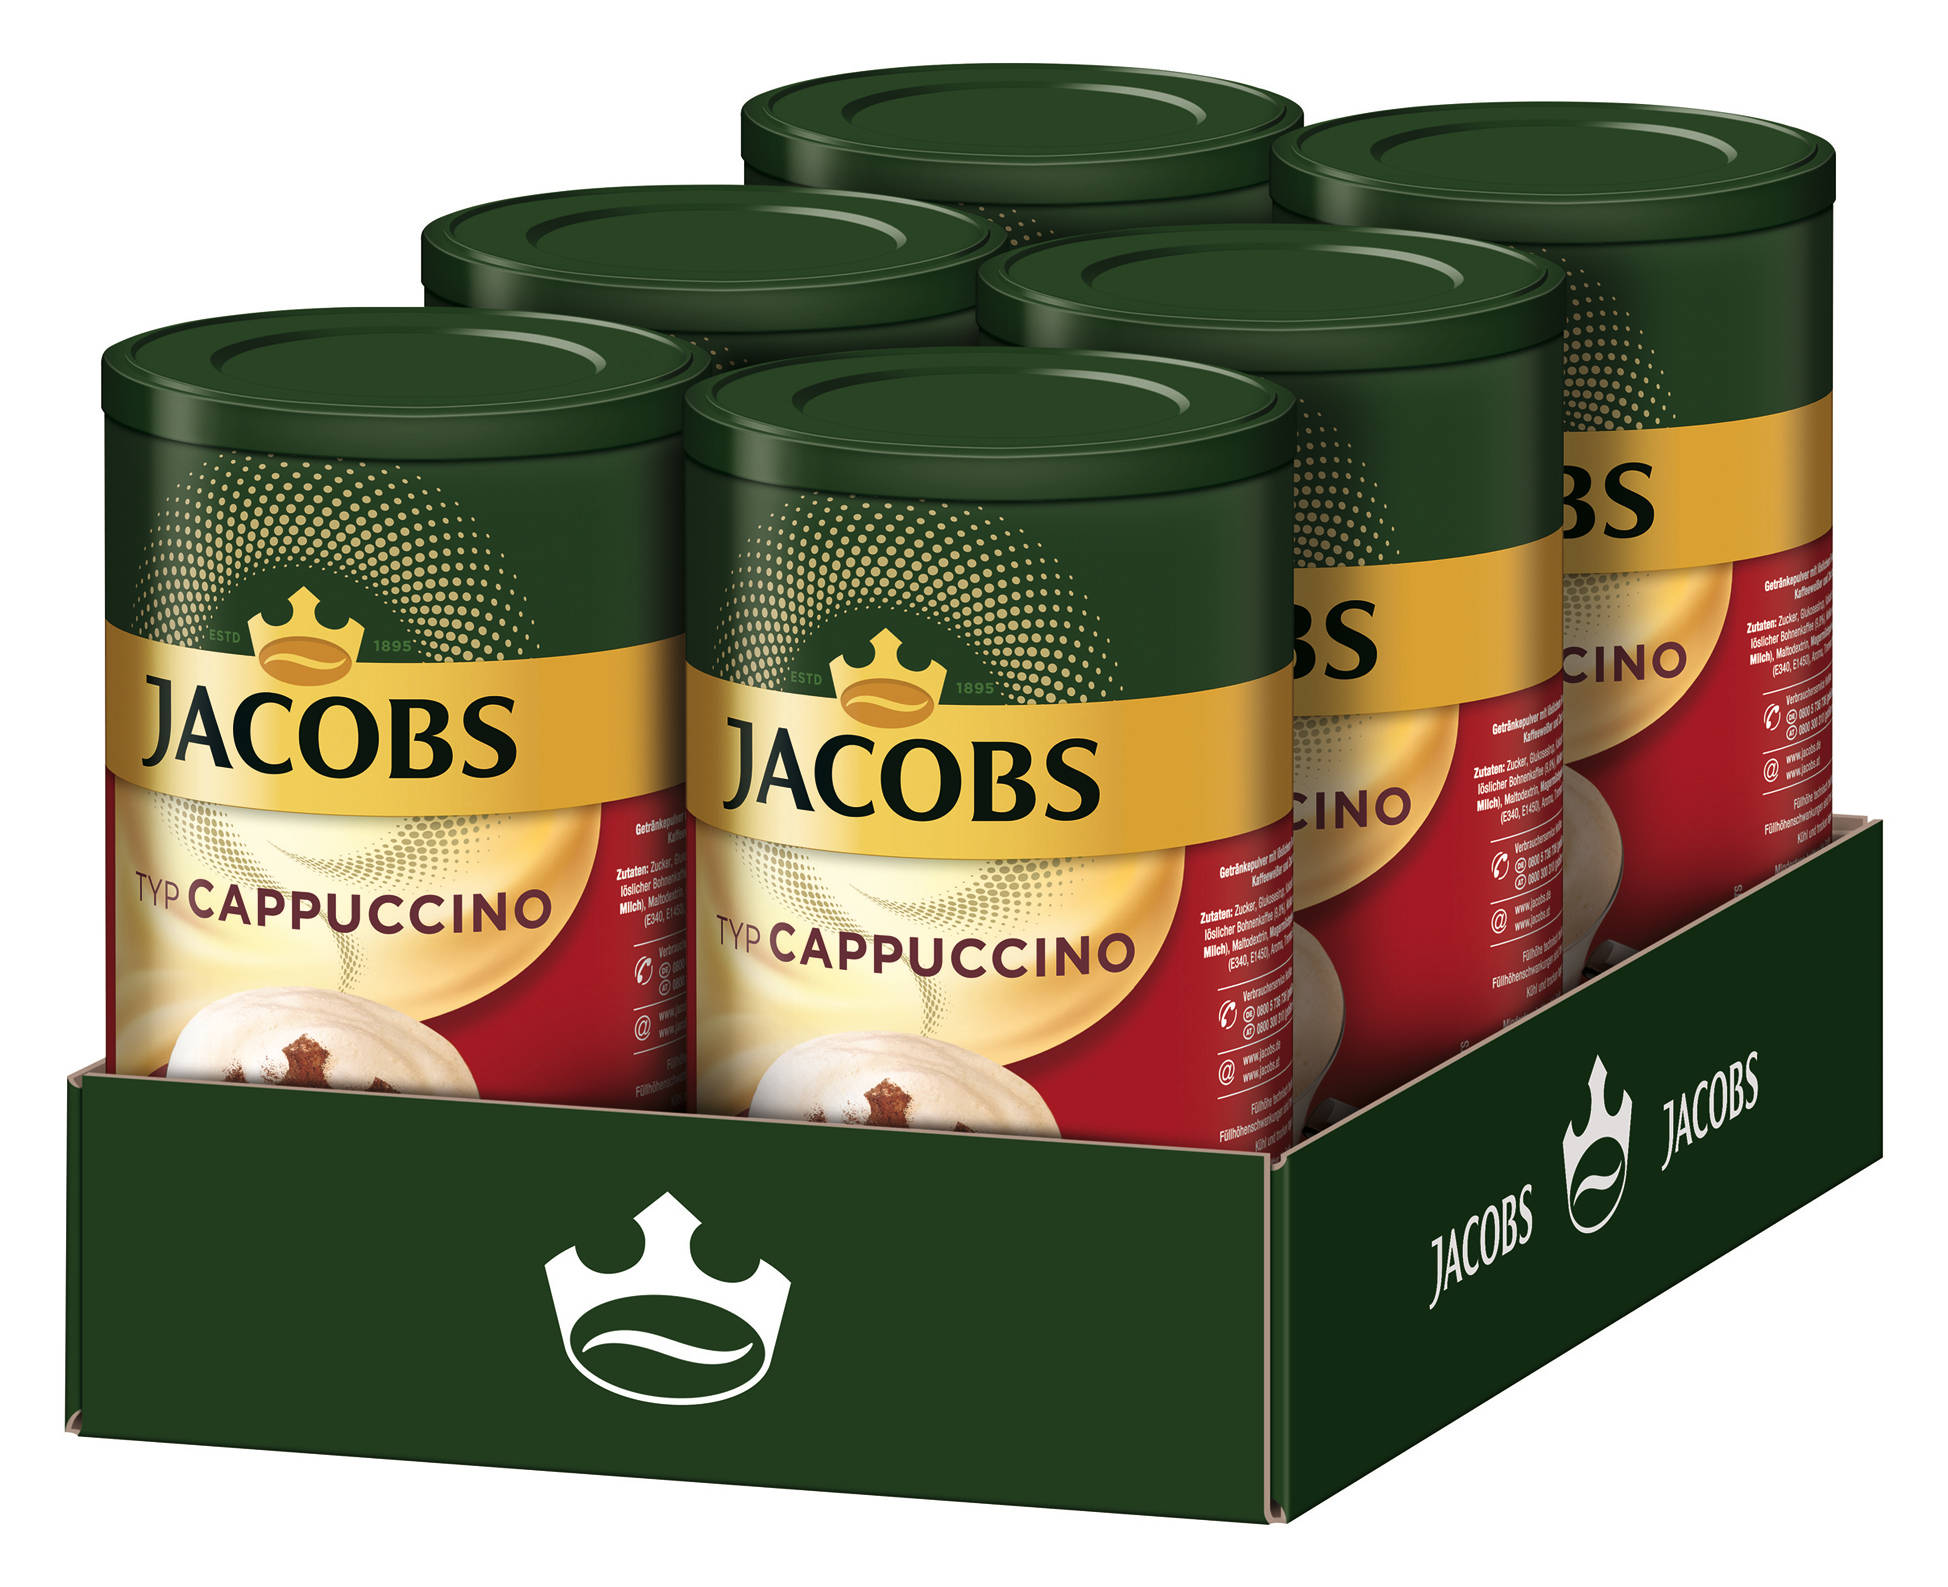 JACOBS Typ Cappuccino 6 x 400 (In Instantkaffee Wasser g heißem Dosen auflösen)